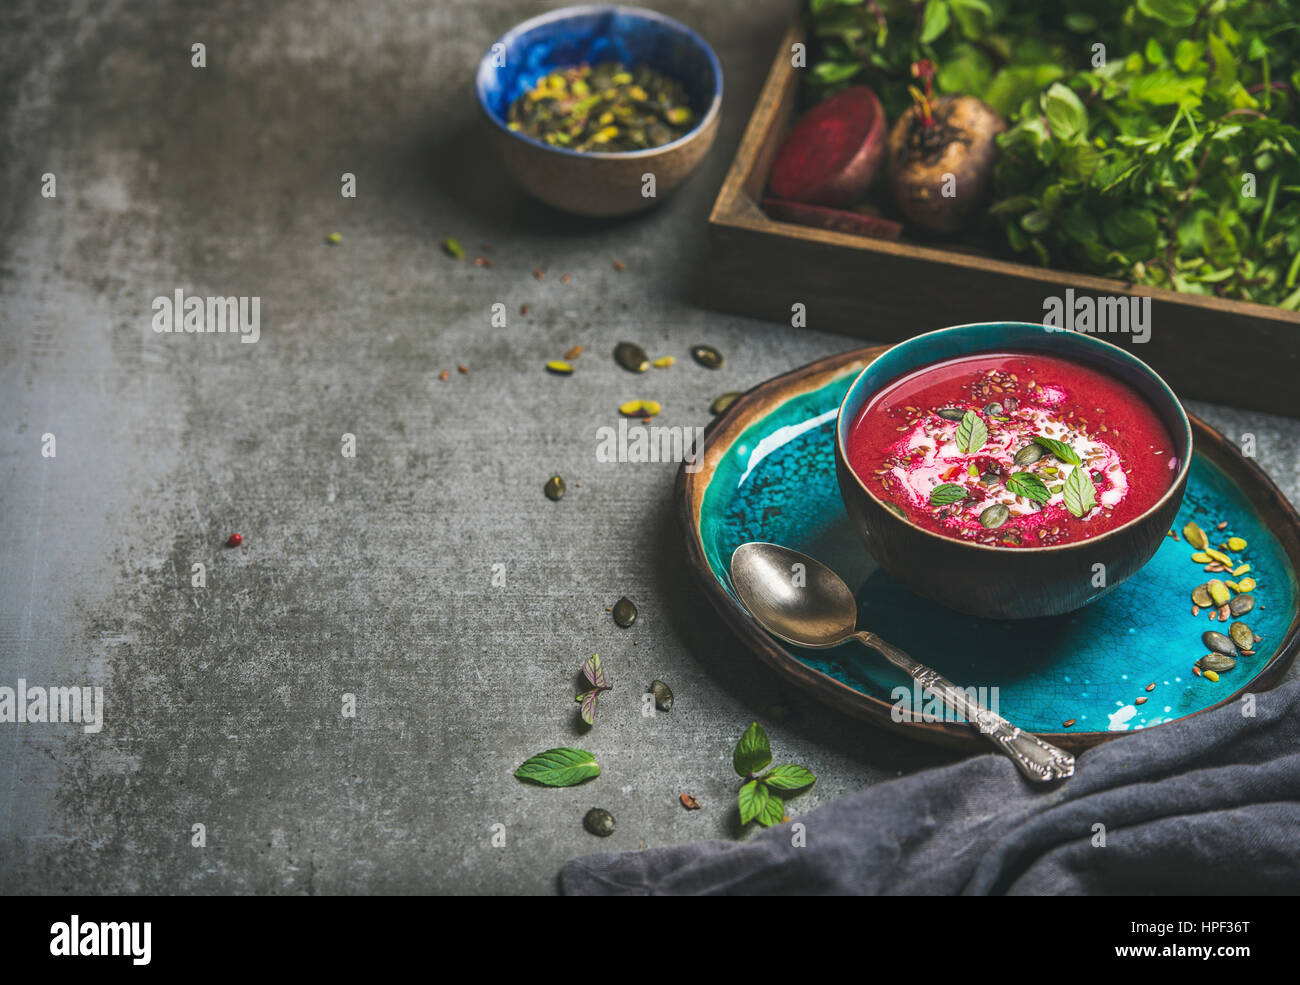 Frühling-Detox-rote Bete-Suppe mit Minze, Chia, Flachs und Kürbis Samen auf blaue Keramik-Platte über graue konkreten Hintergrund, Textfreiraum. Diäten, sauber Essen Stockfoto